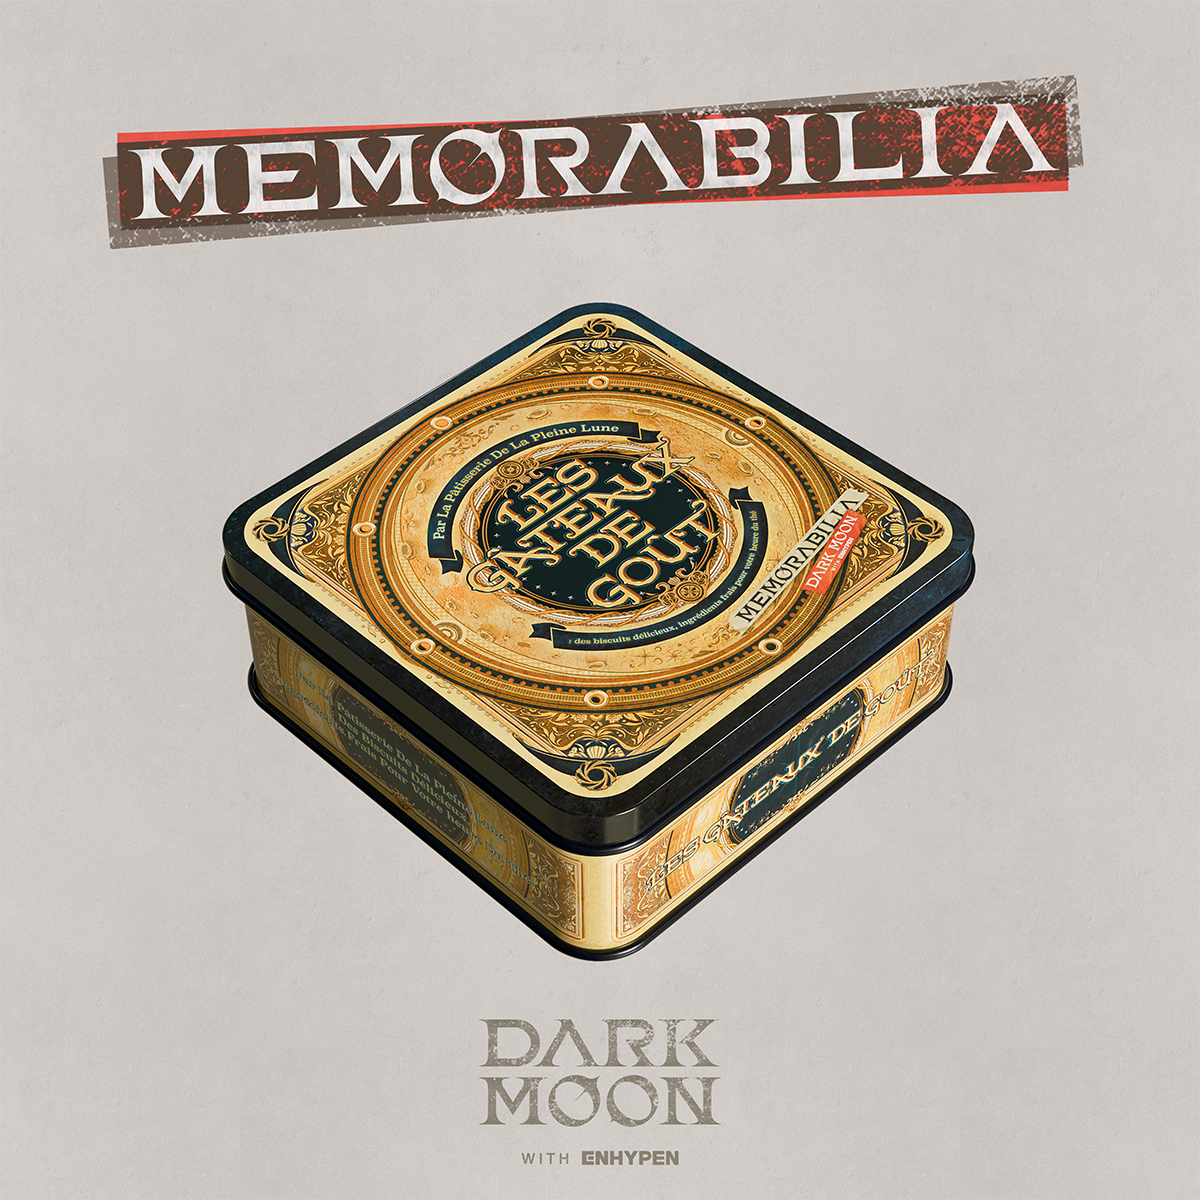 ENHYPEN - DARK MOON SPECIAL ALBUM 'MEMORABILIA' (Moon Ver.) [PRE-ORDER]